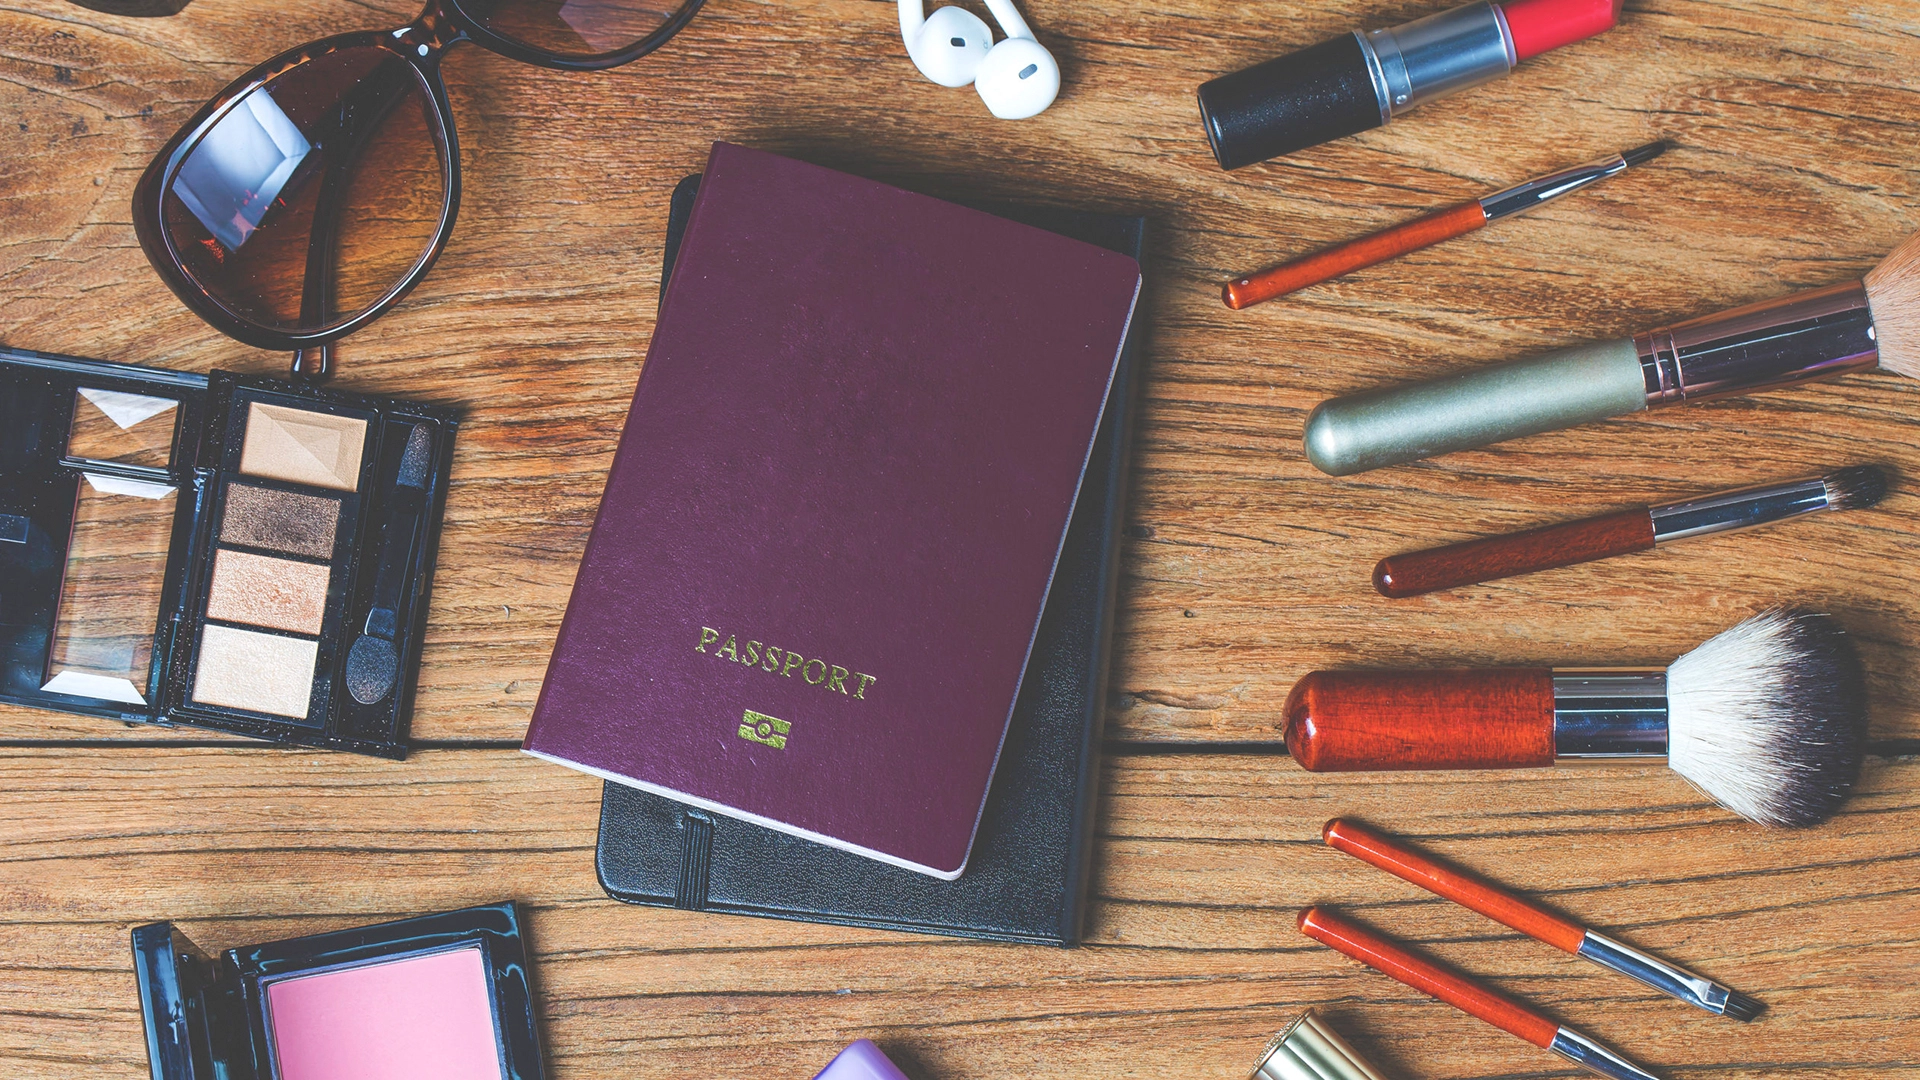 Photographie du passeport avec du maquillage pour montrer la préparation au voyage avec le comparateur de maquillage